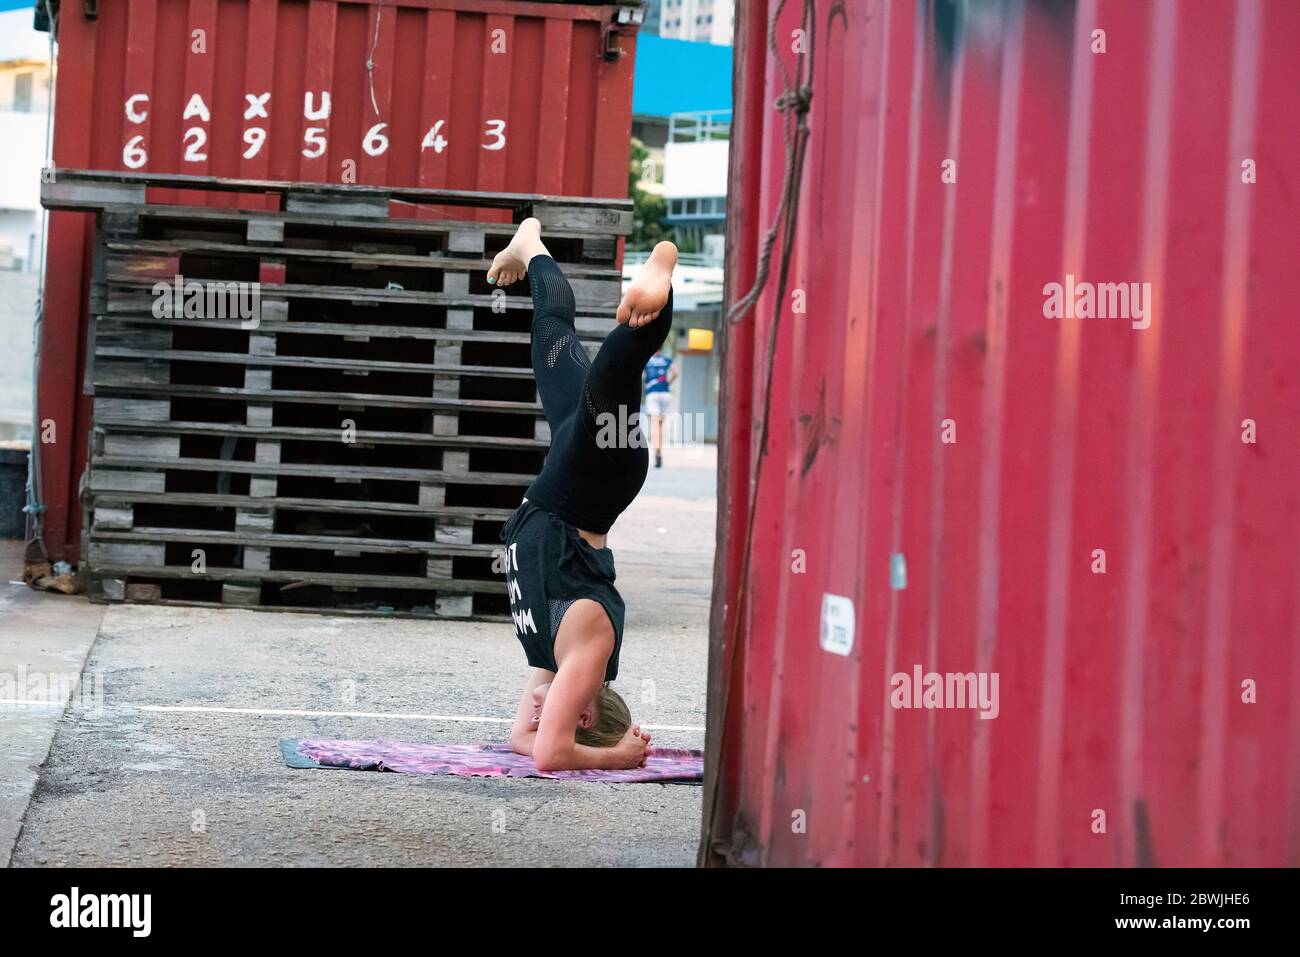 Persone che praticano lo Yoga all'aperto durante il COVID-19, Coronavirus Pandemic, Hong Kong, Cina. Foto Stock